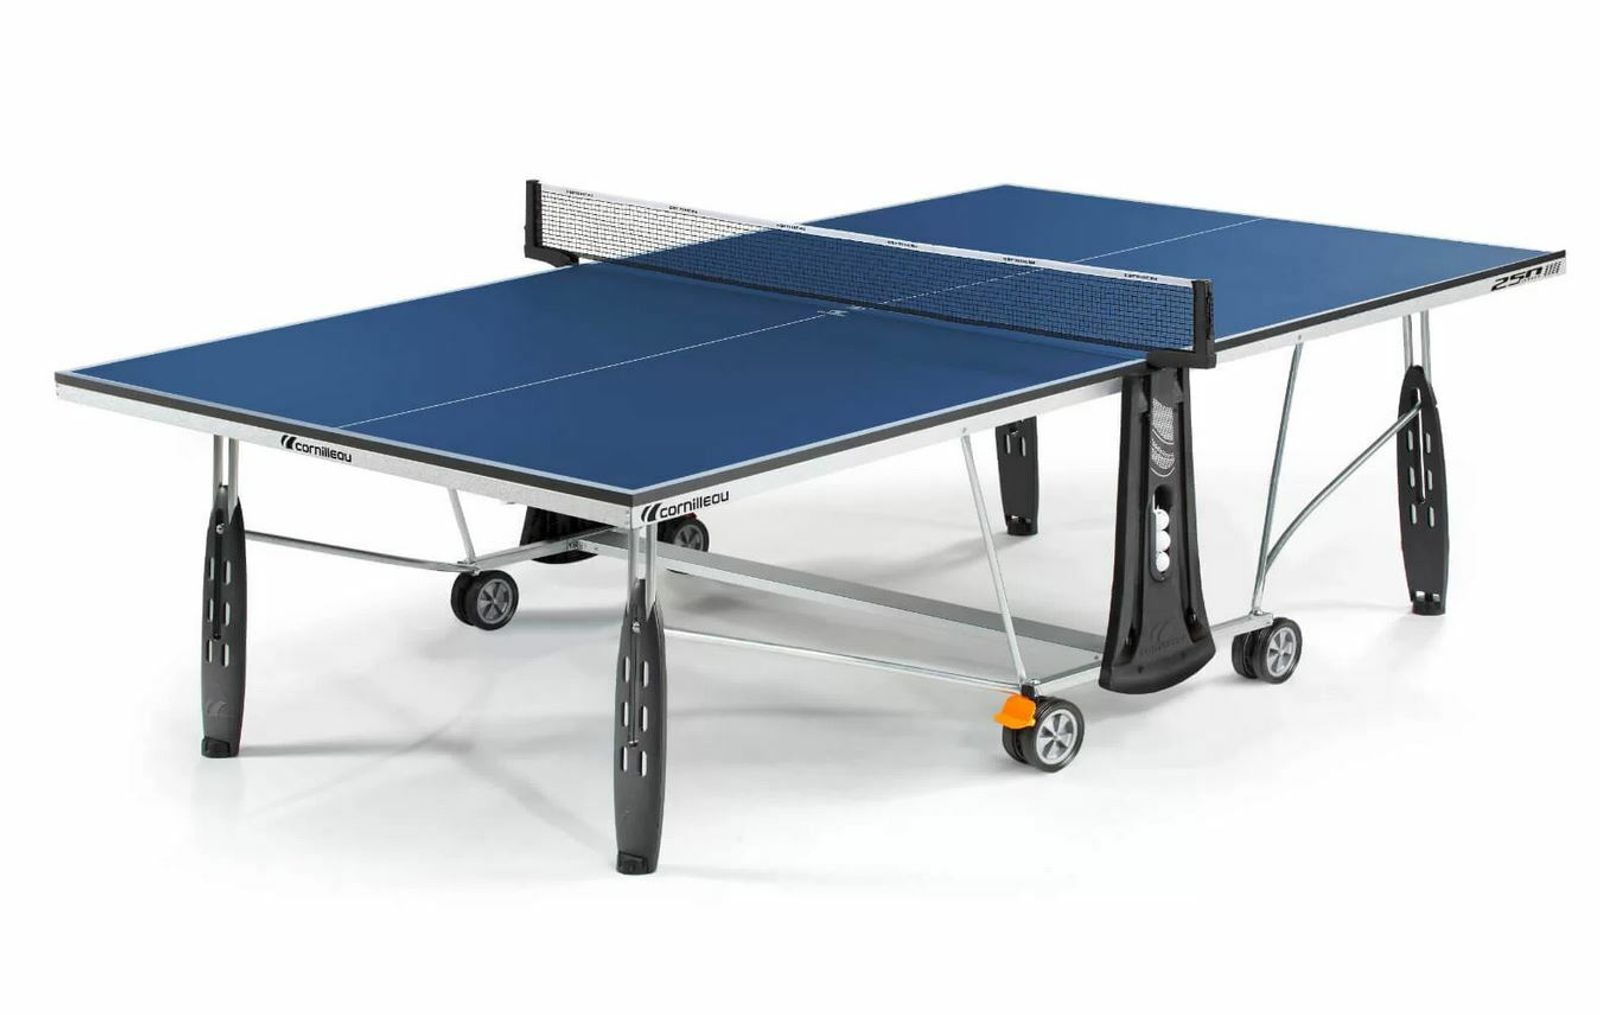 Теннисный стол Cornilleau складной SPORT 250 INDOOR blue 19мм фото №1